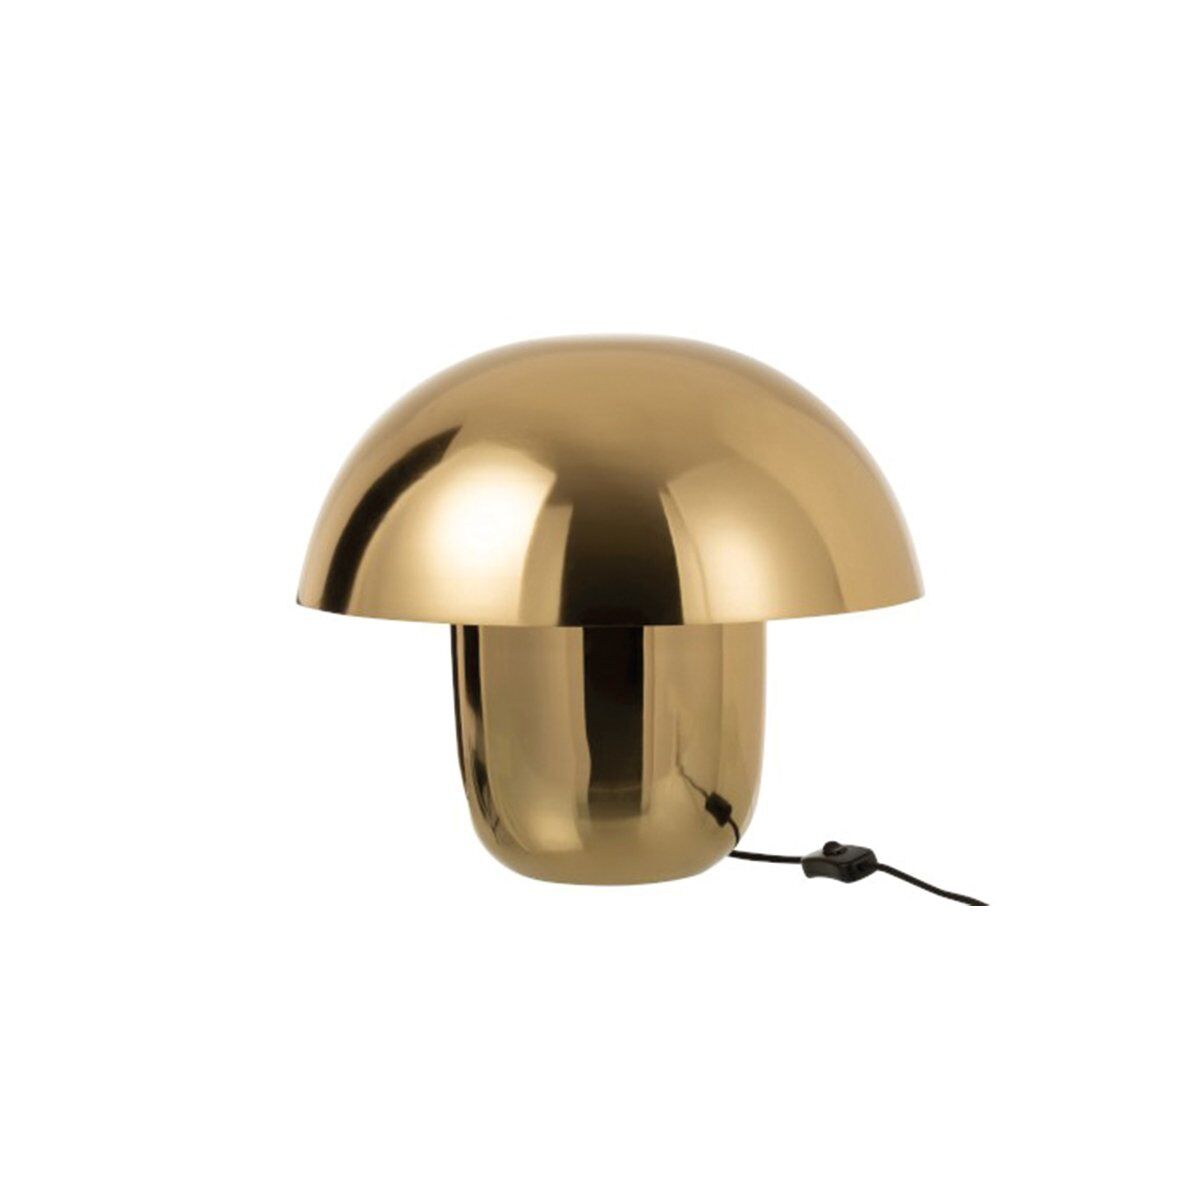 Meubles & Design Lampe design champignon métal doré